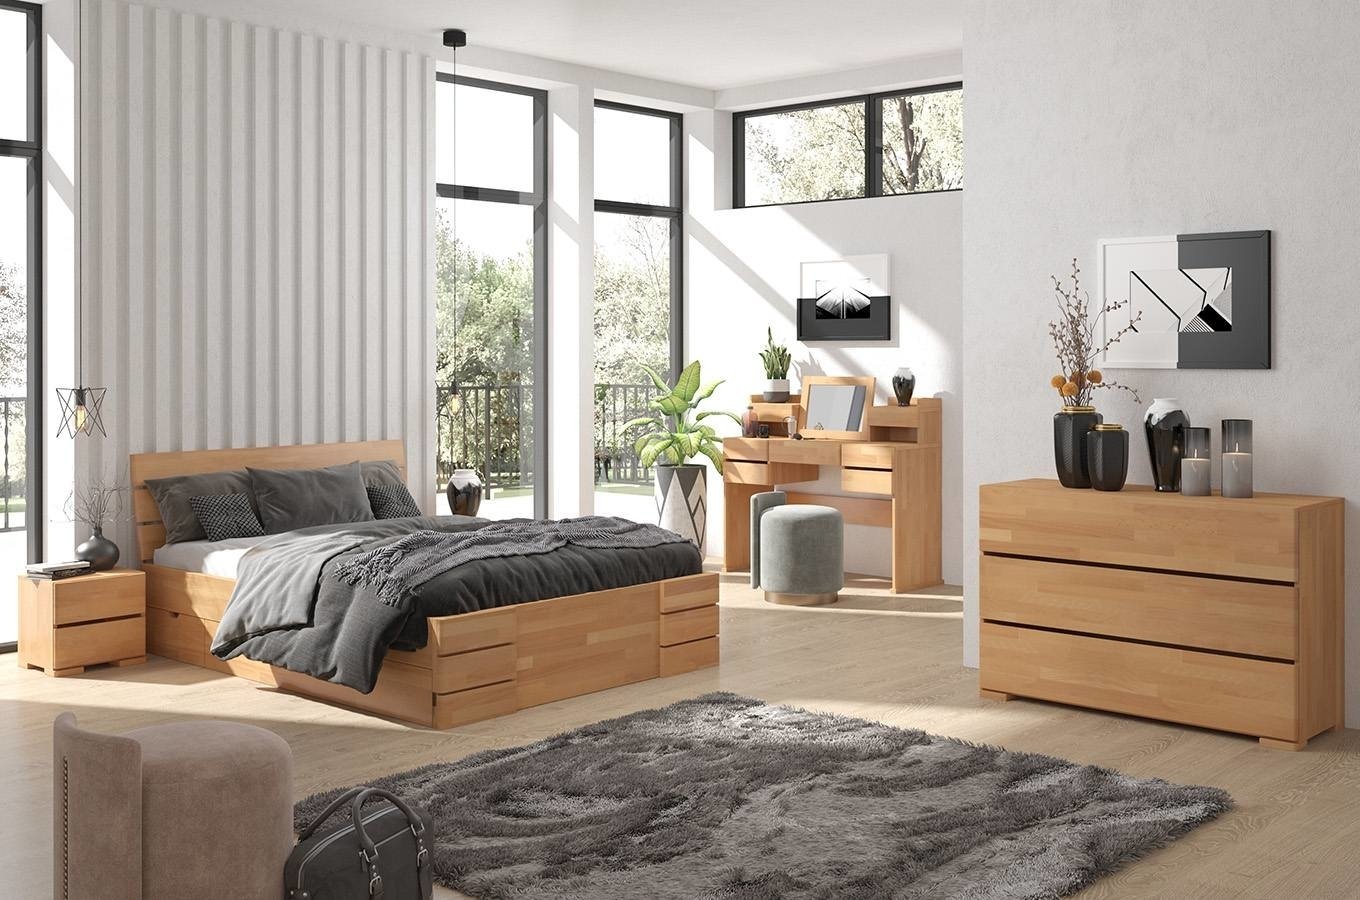 Łóżko drewniane bukowe Visby Sandemo High Drawers (z szufladami)